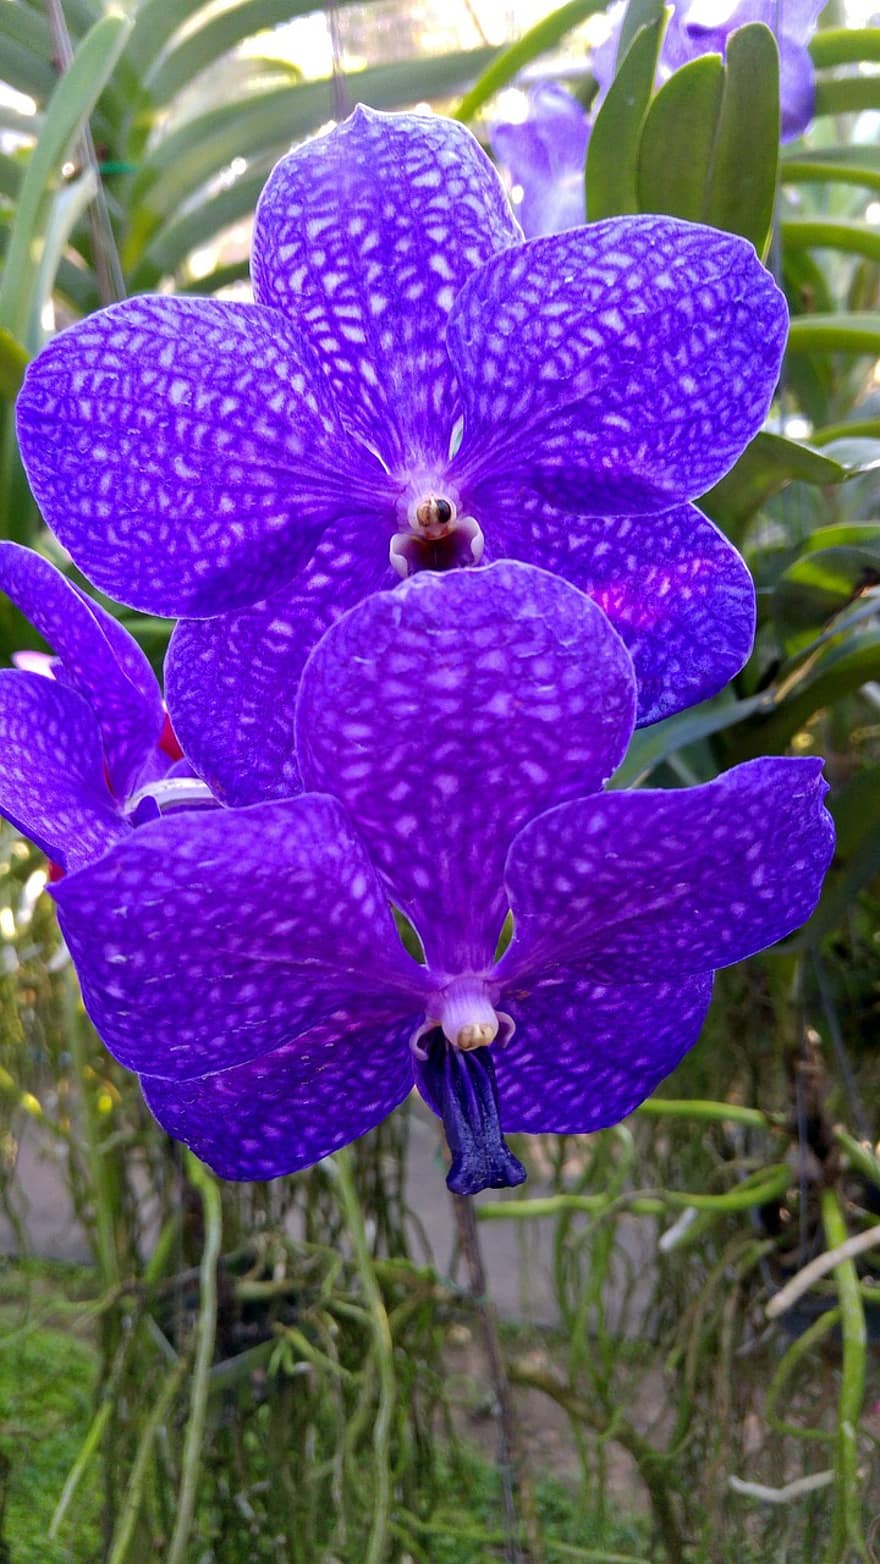 Orchidee, Pflanze, violett, Farbe, Blume, Natur, blühen, Orchideen, Entspannung, Flora, exotisch